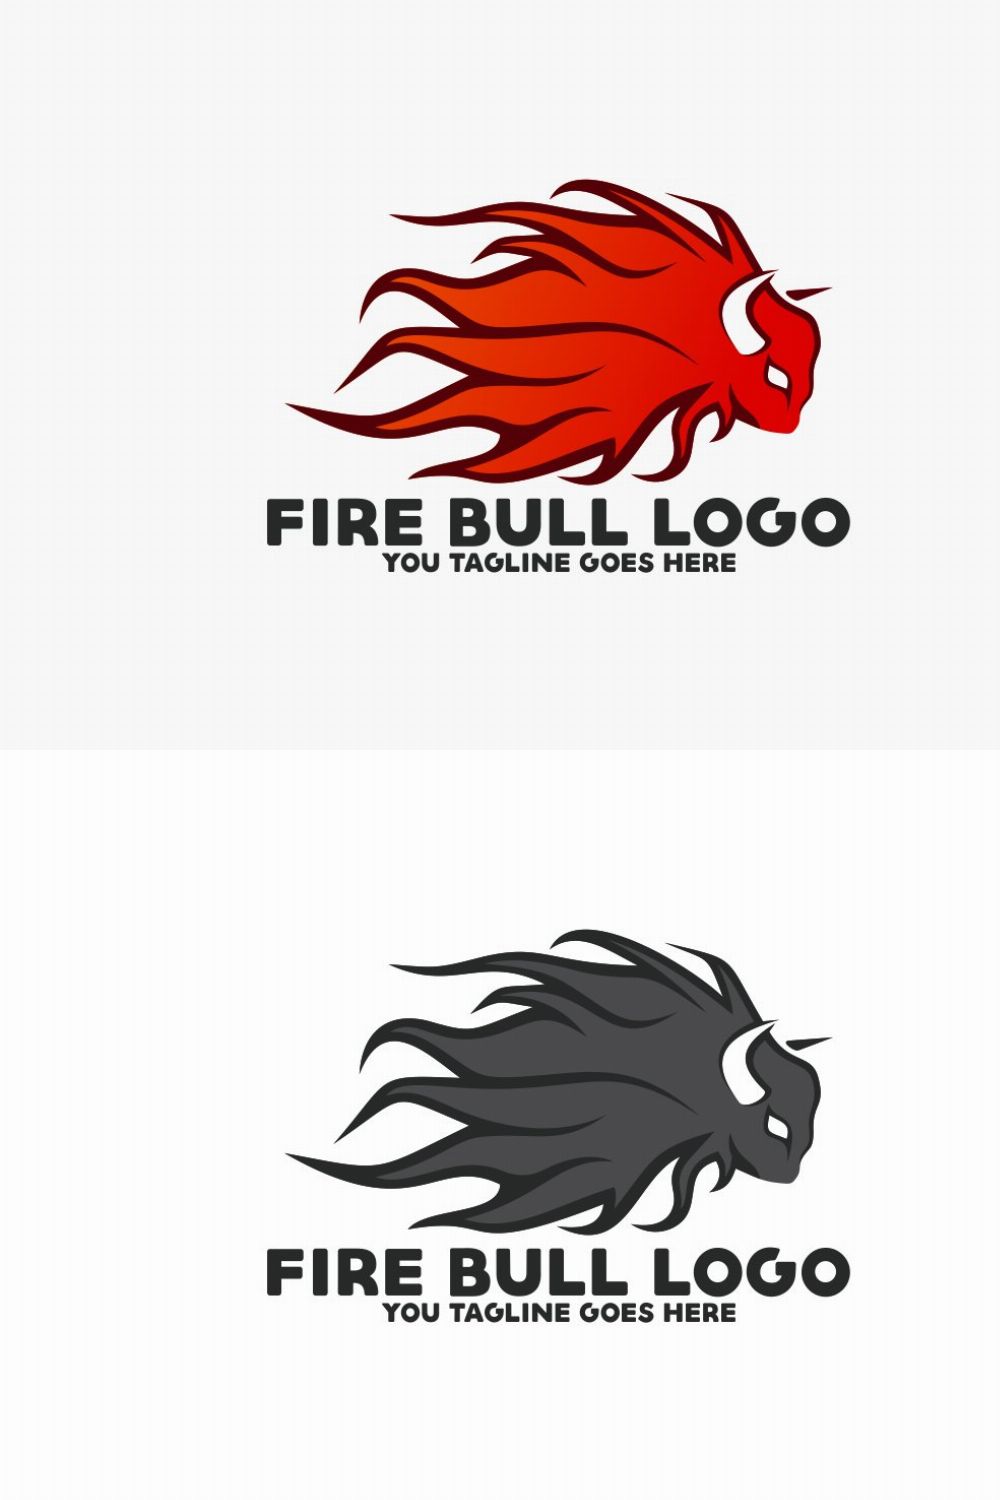 Fire Bull Logo pinterest preview image.